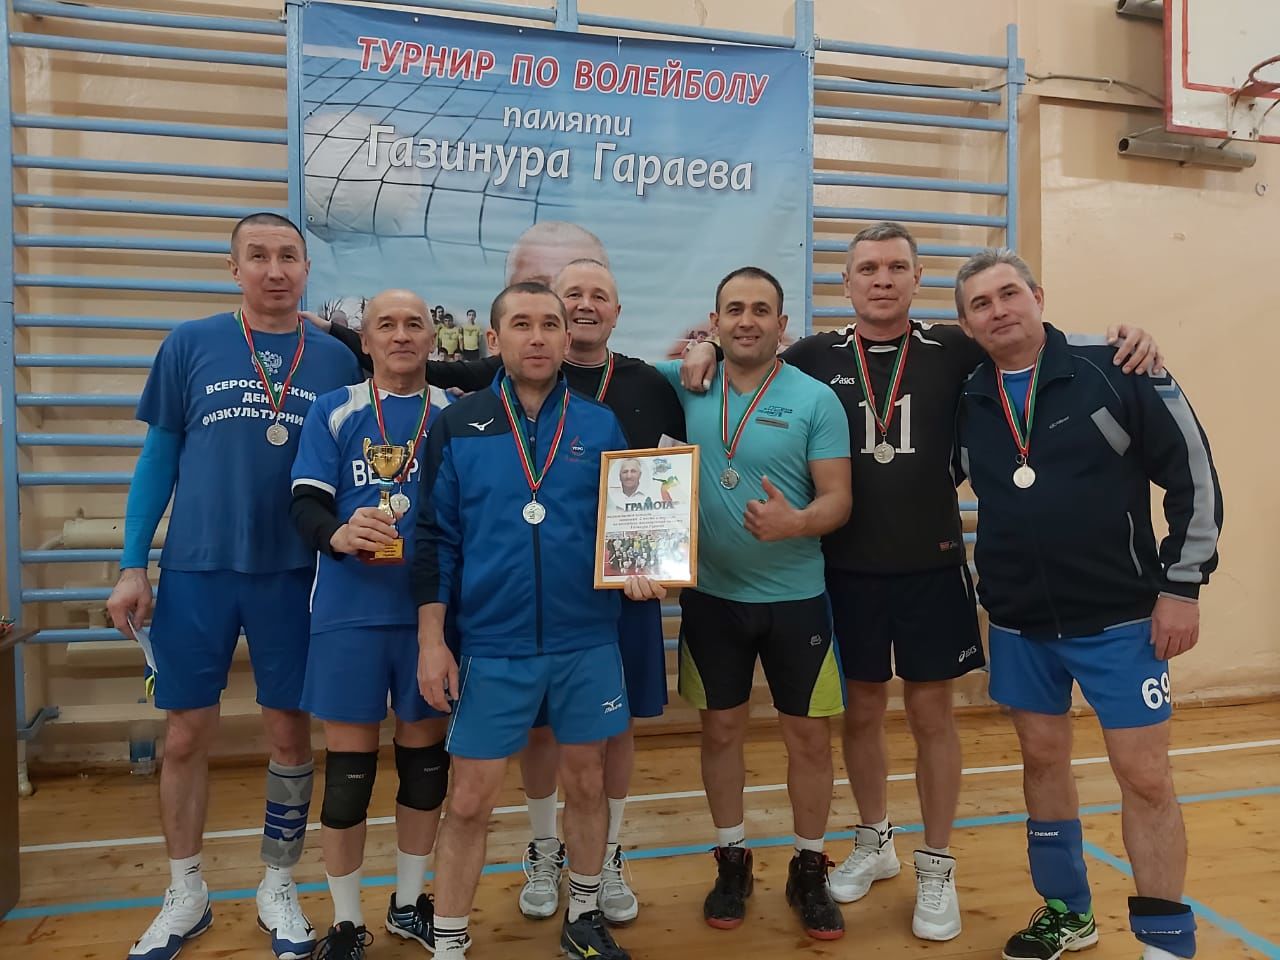 В Азнакаево прошел волейбольный турнир памяти Газинура Гараева